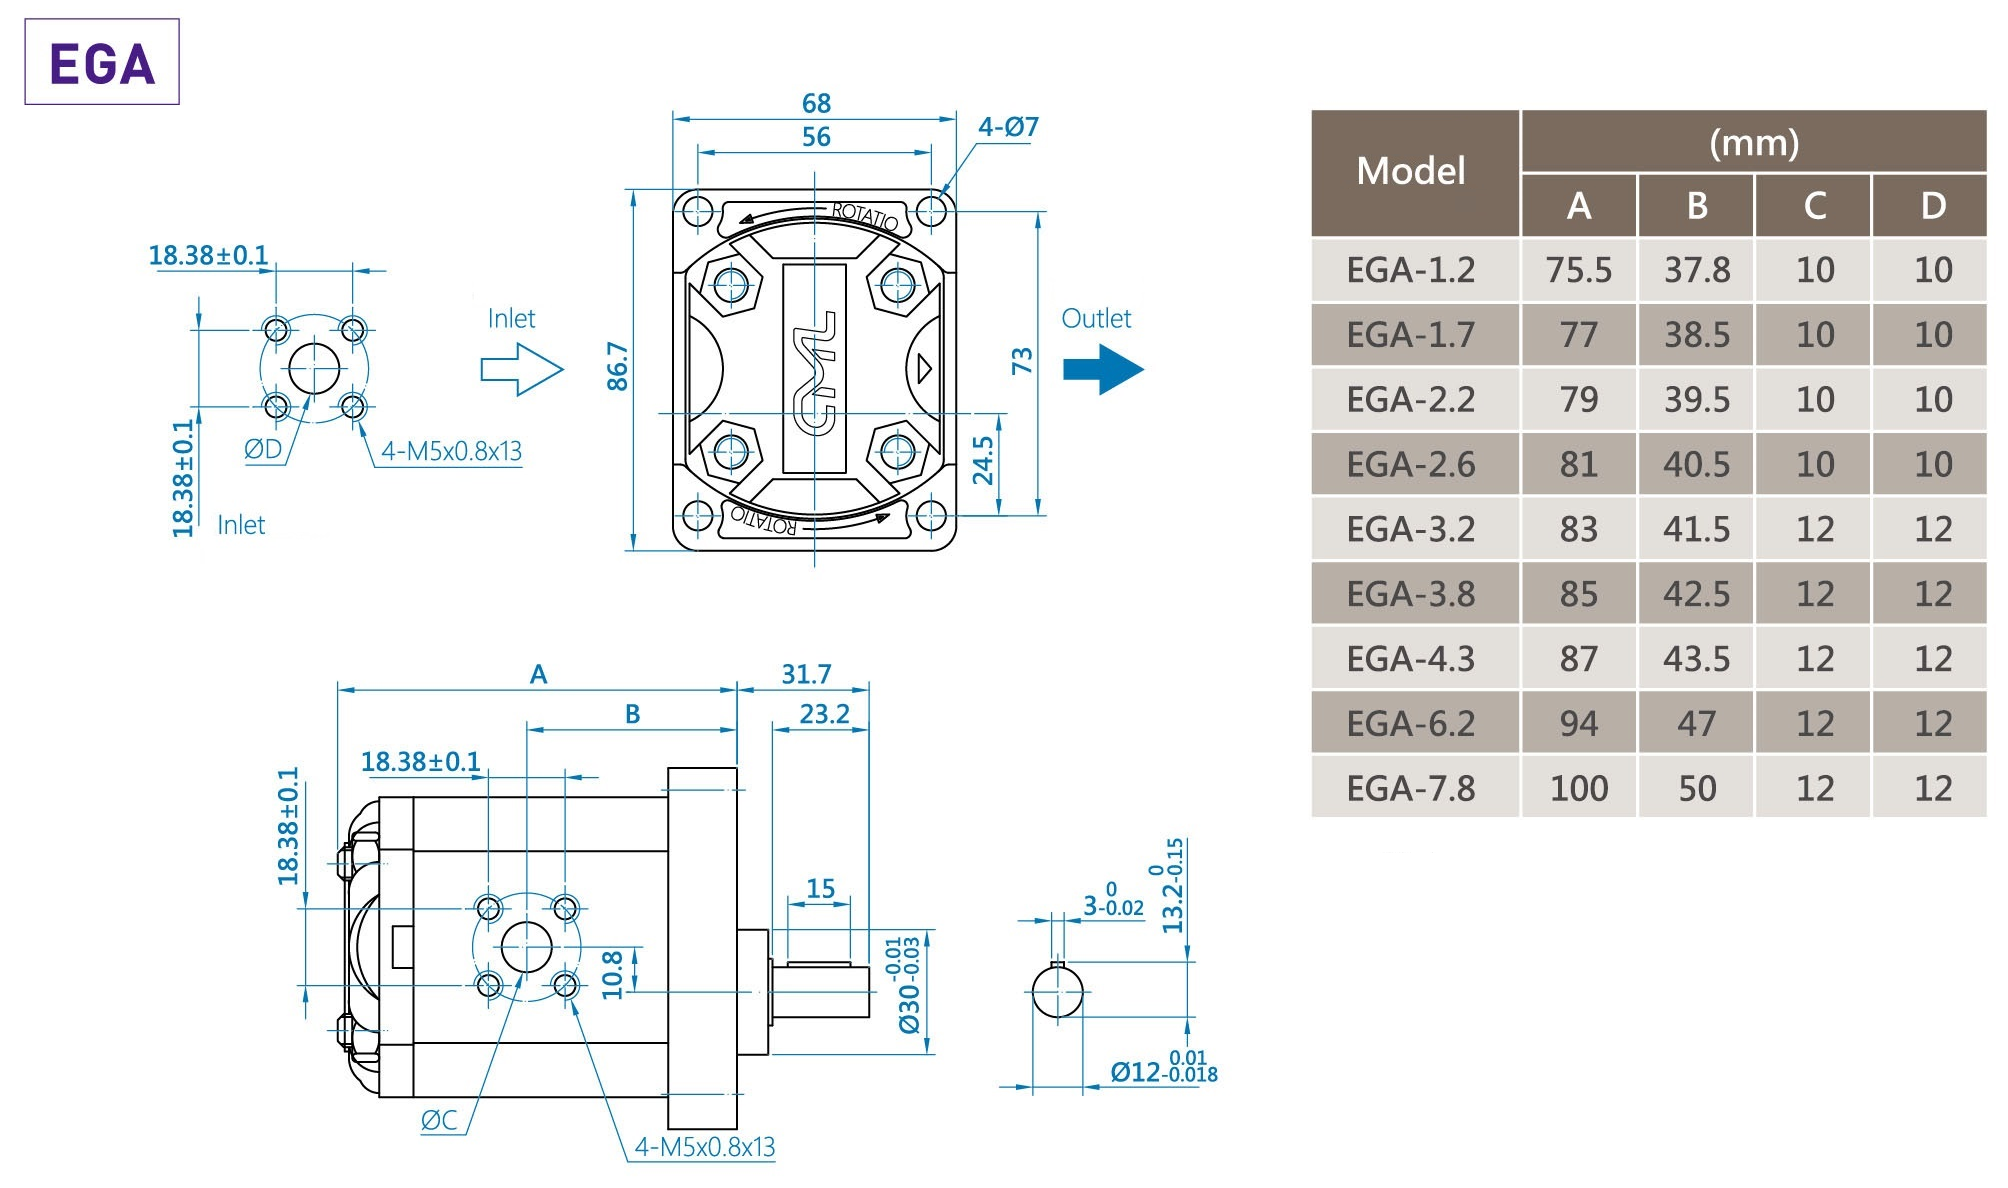 CML A Series Compact Low noise External Gear Pump Measurement, Dimension, Diagram